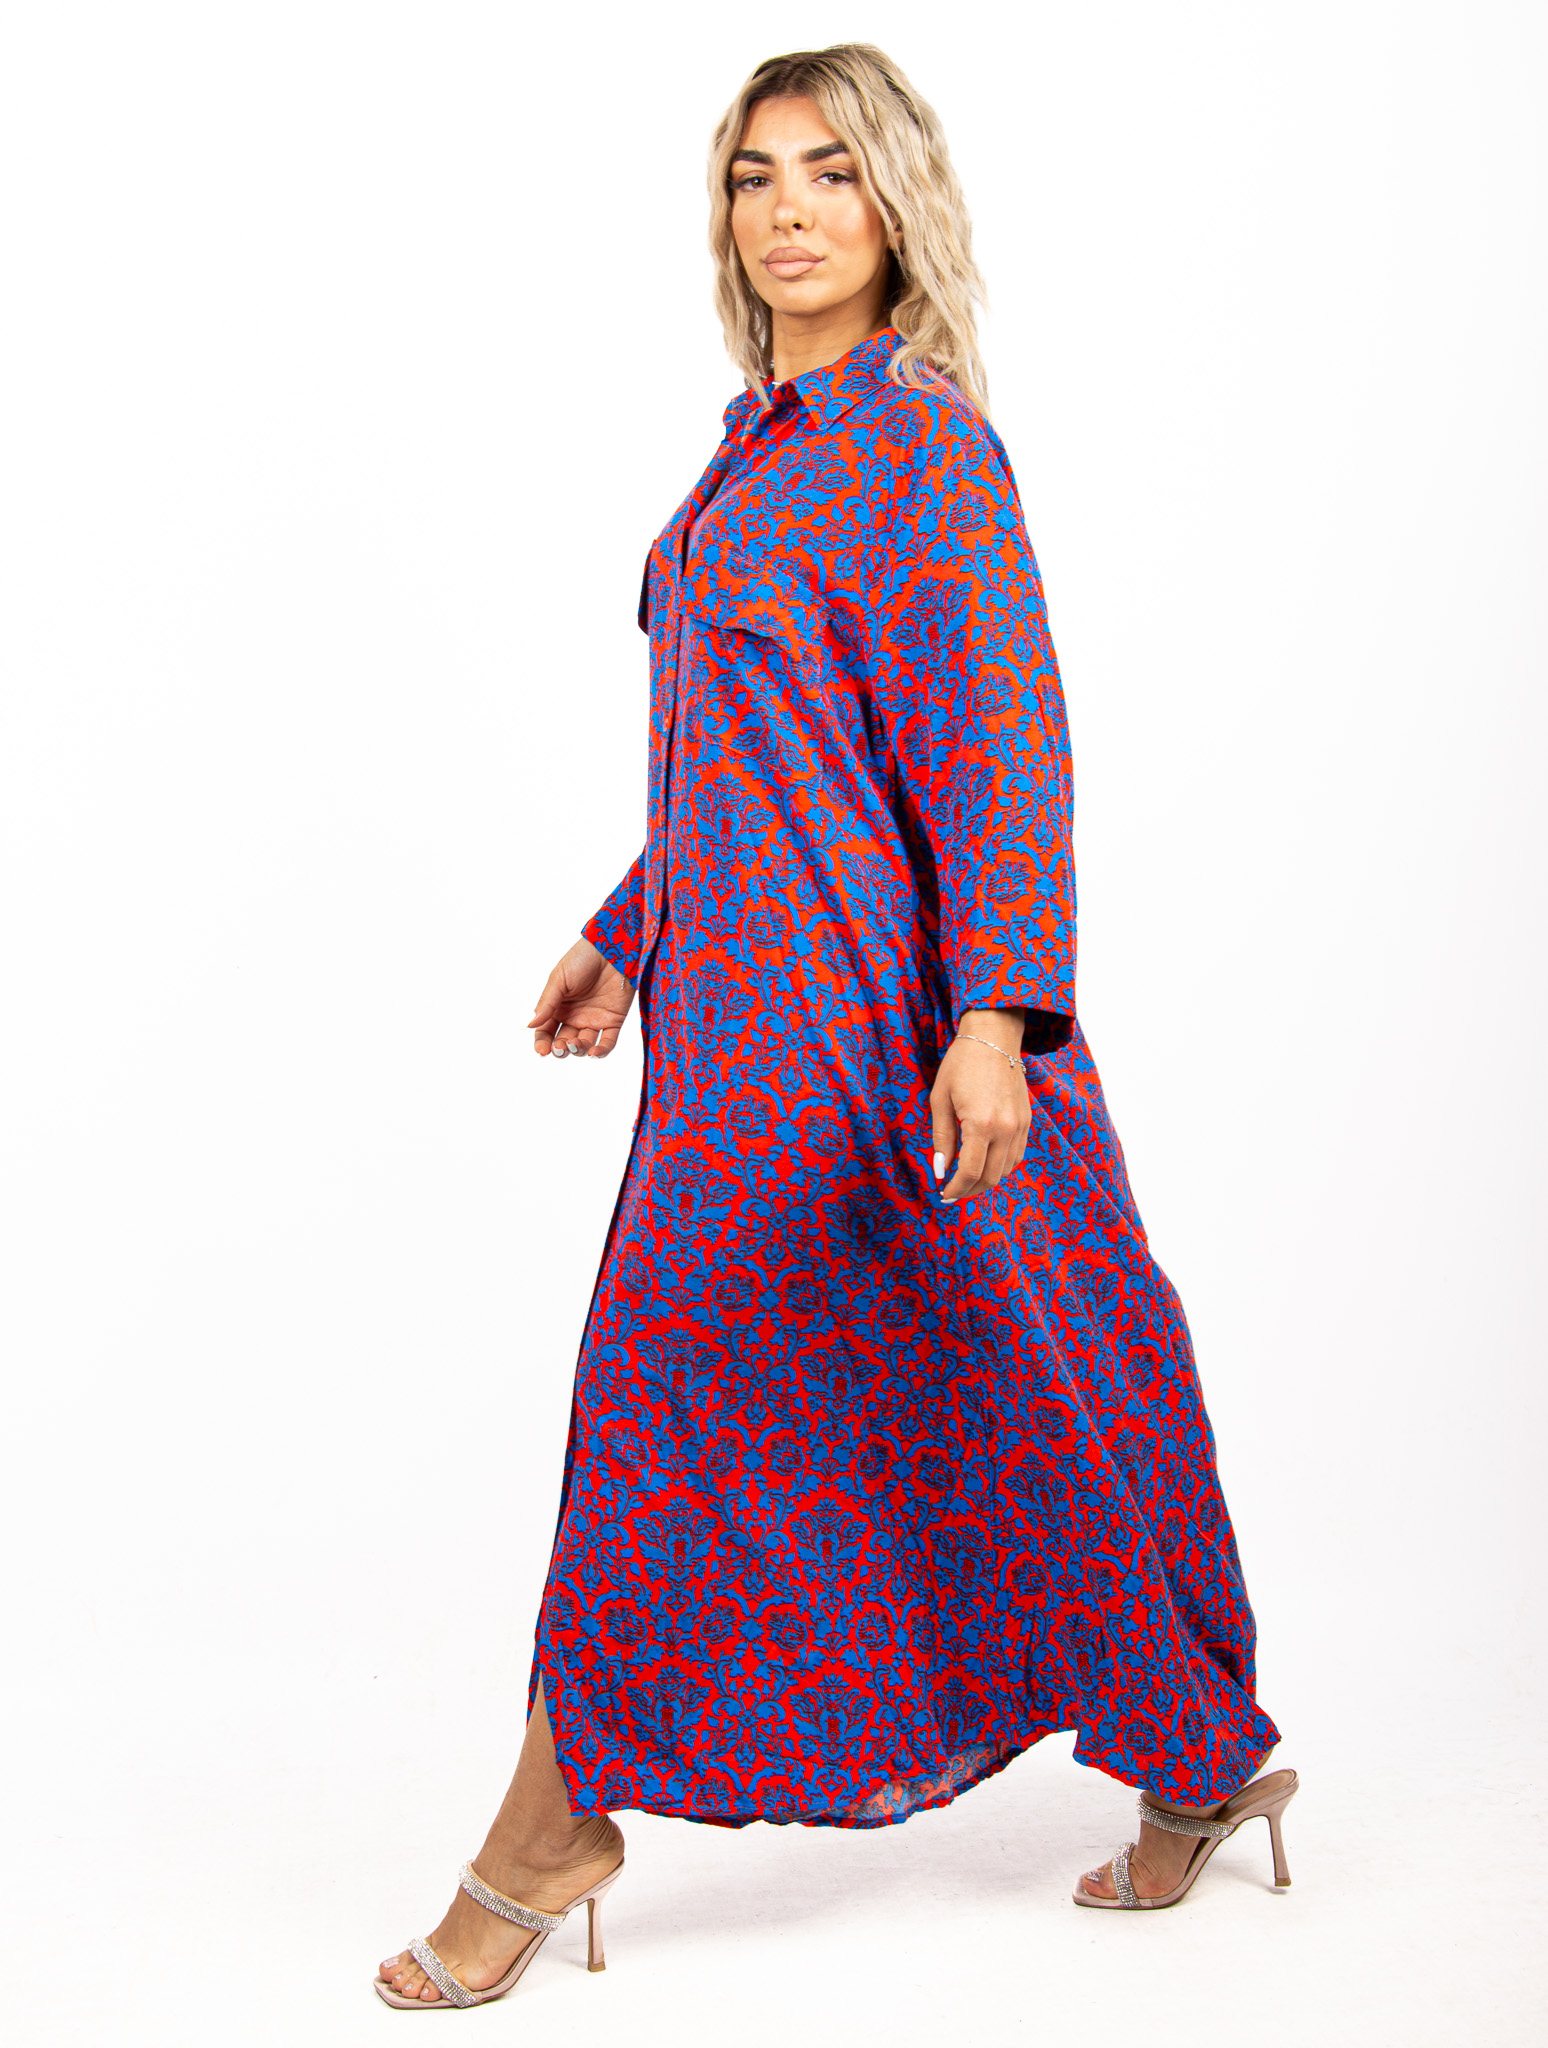 Φόρεμα Καφτάνι Βaroque Κόκκινο-Μπλε | EllenBoutique